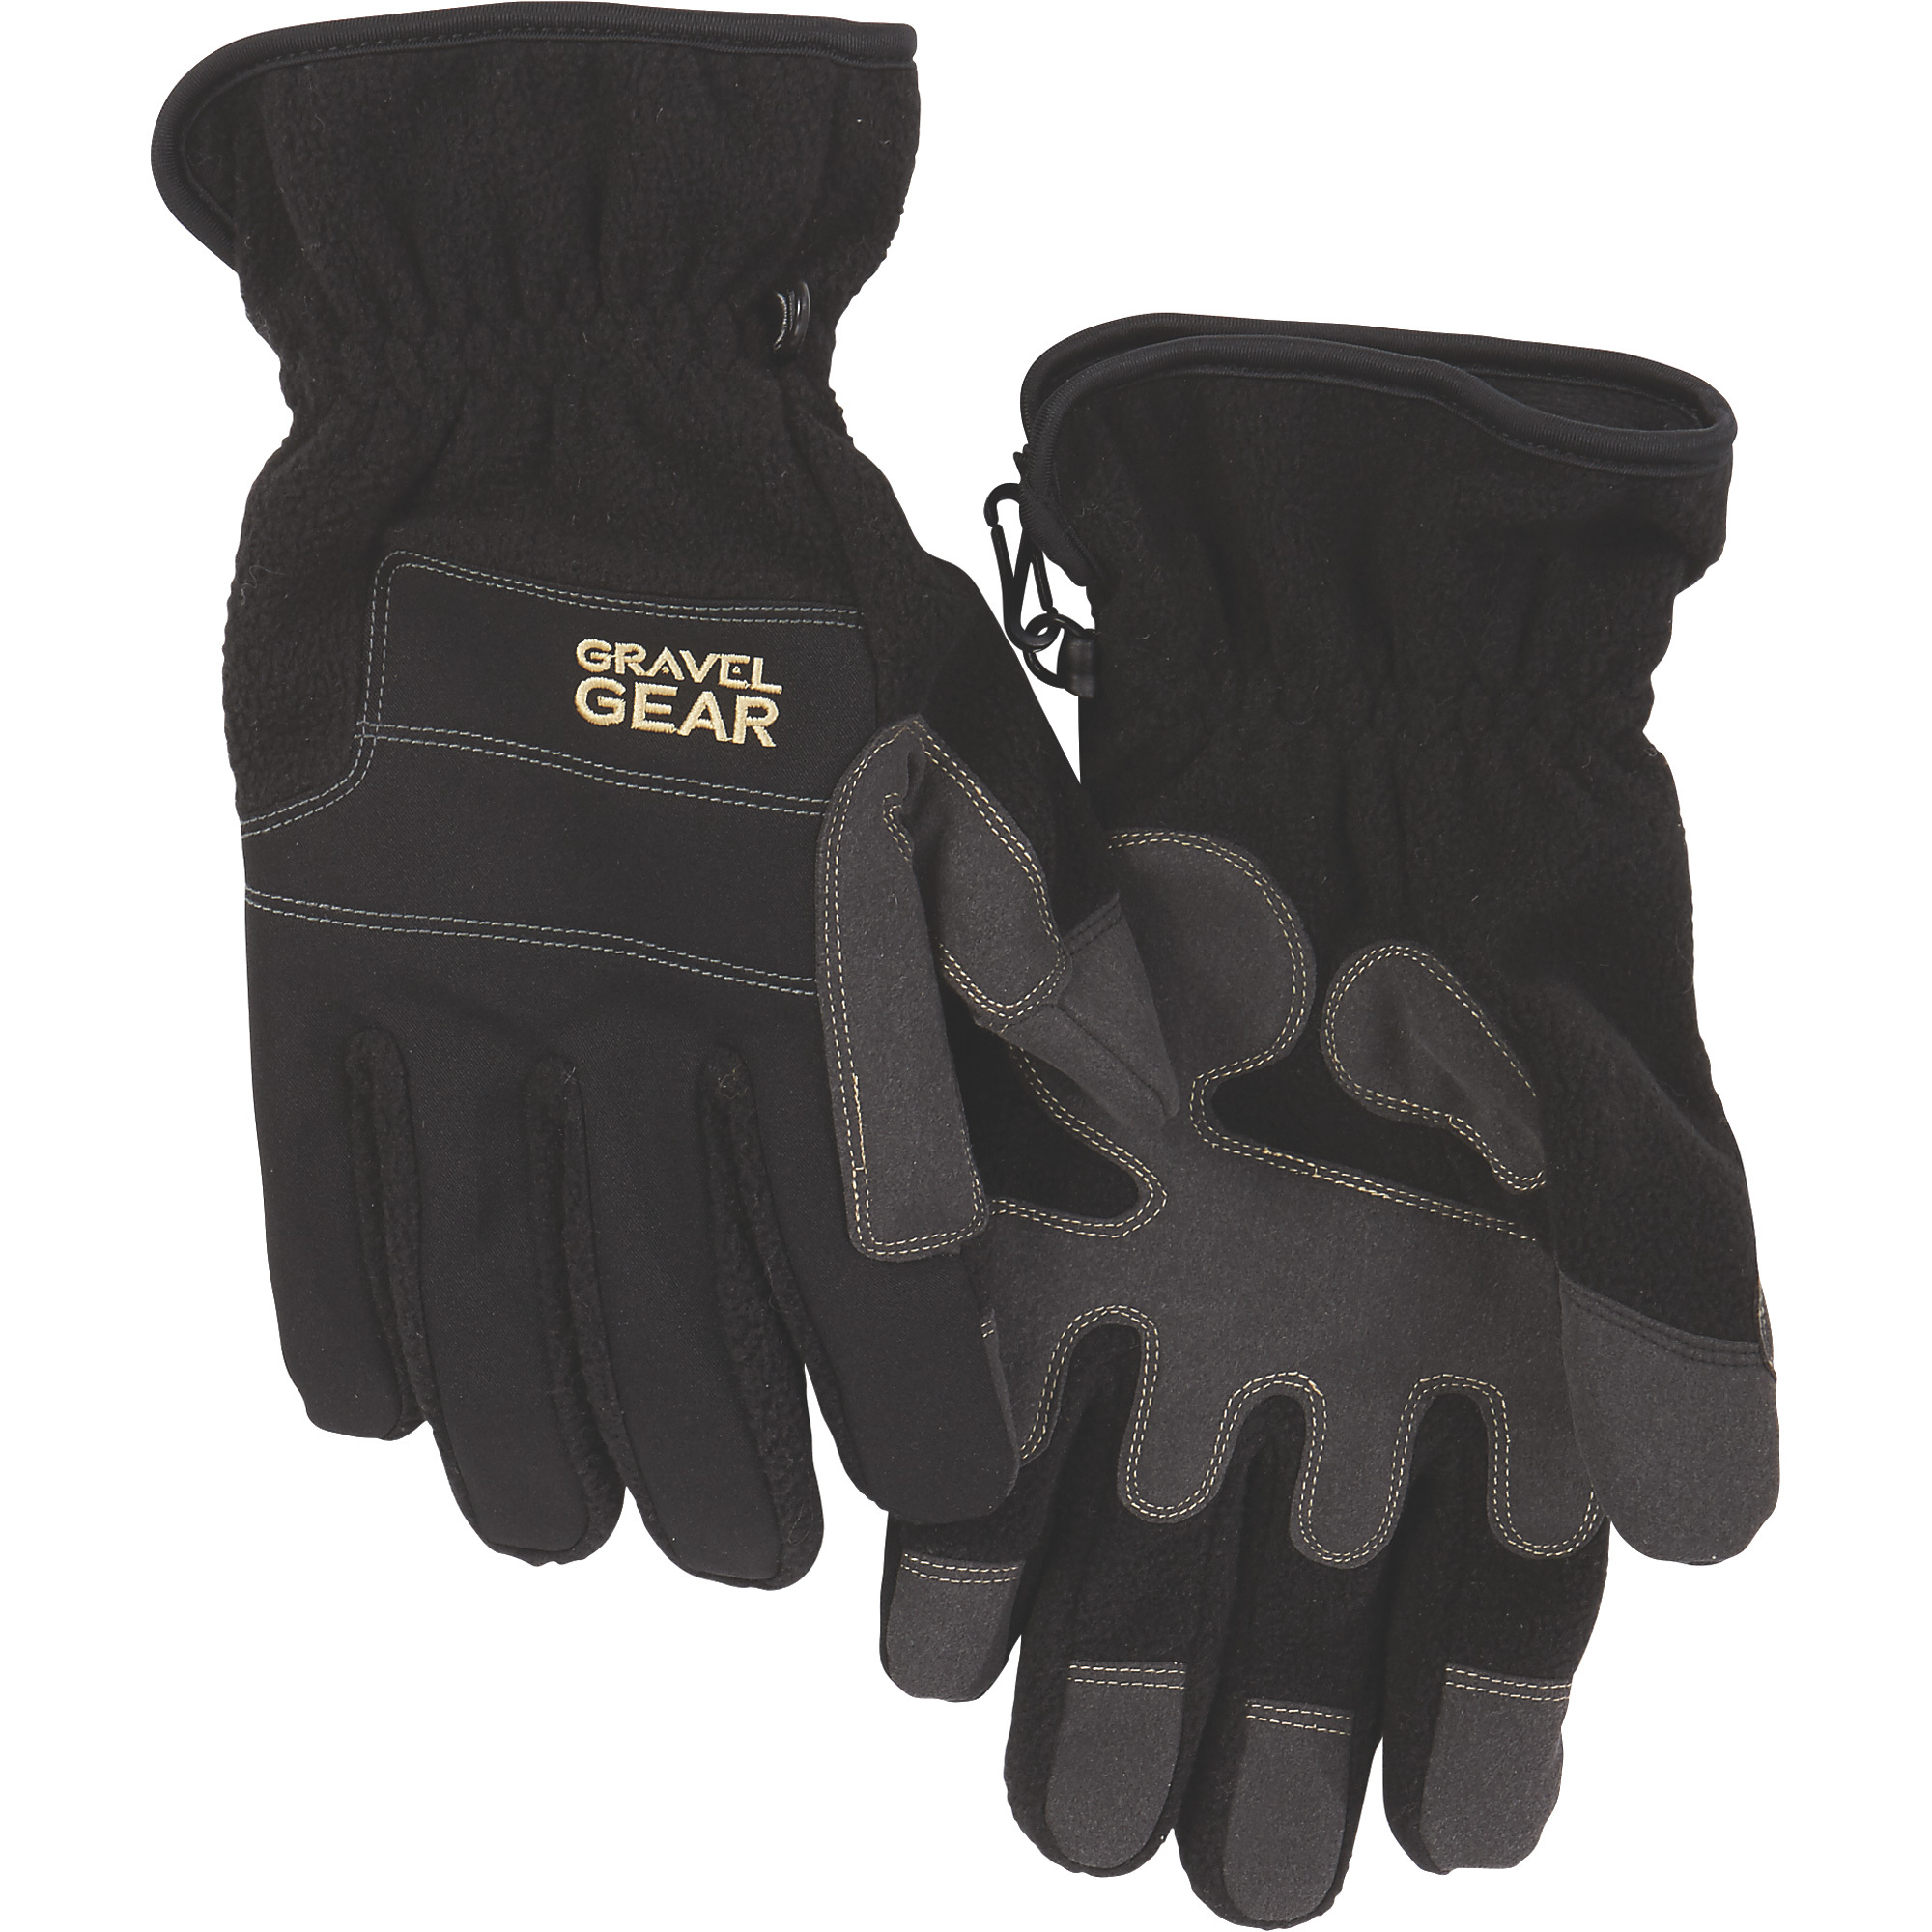 Gravel Gear Men's Tech Fleece Gloves with Thinsulate â Black, XL